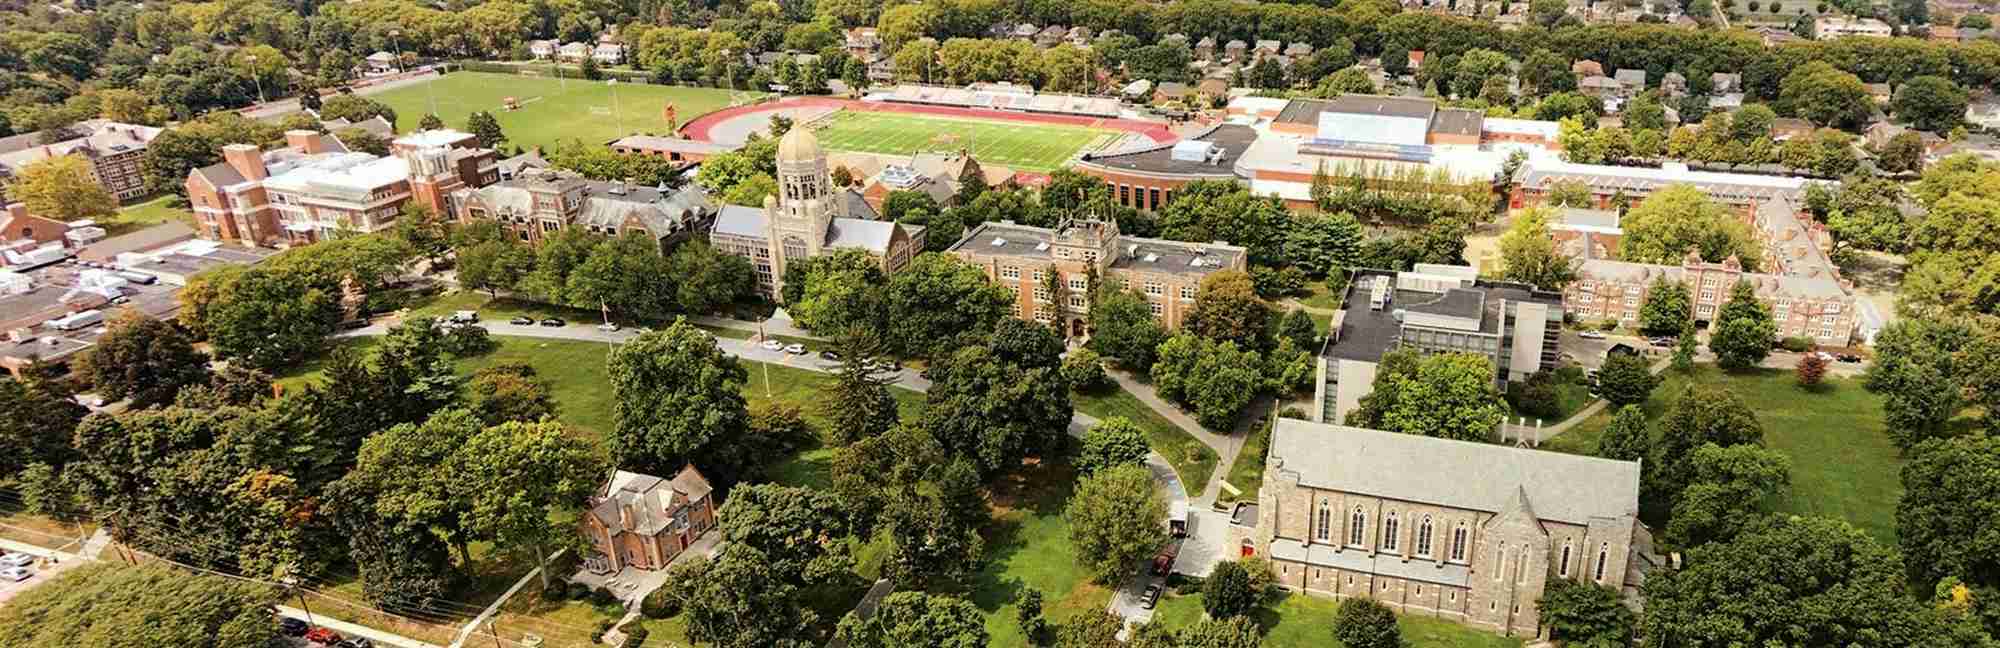 elm-pg-billboard-app campus aerial